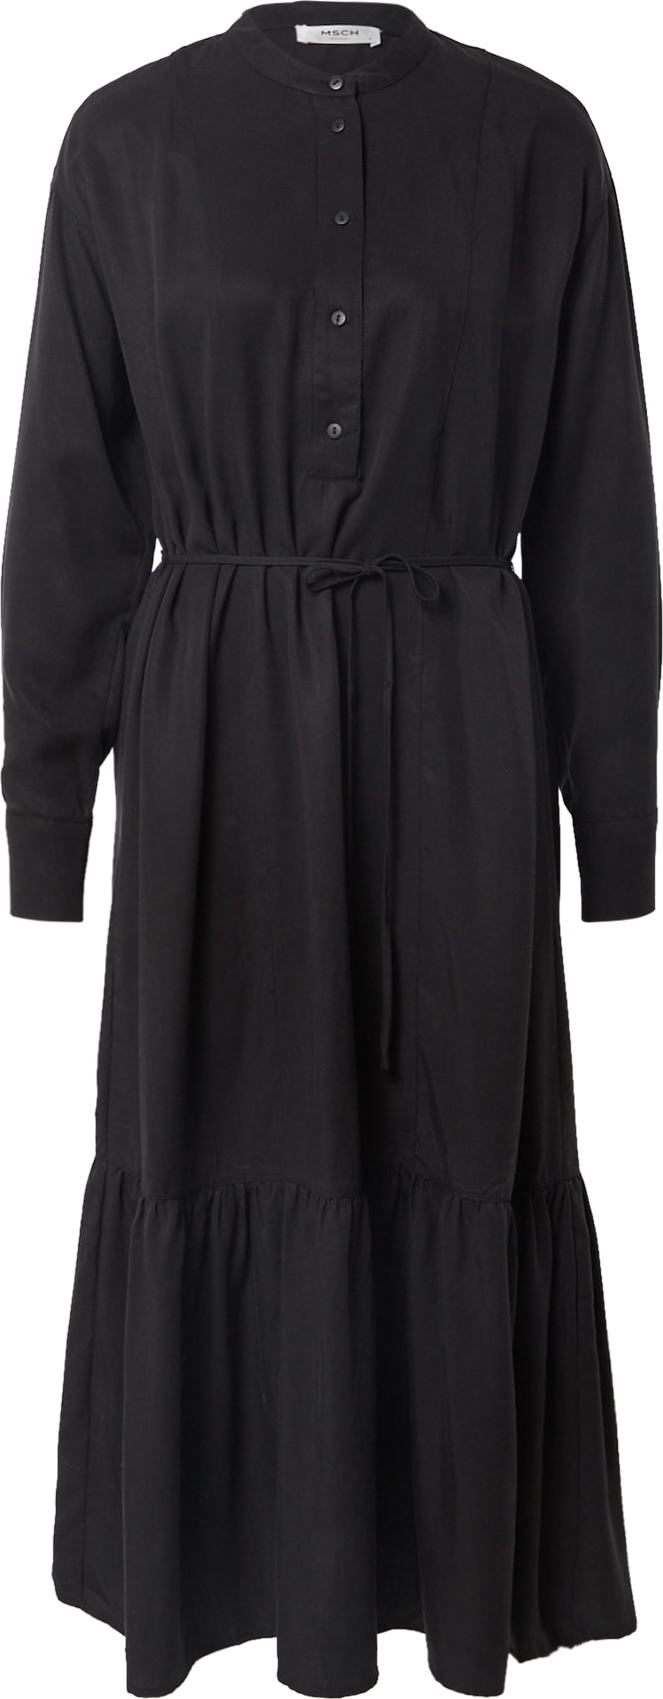 MOSS COPENHAGEN Košilové šaty 'Norine Stephie' černá